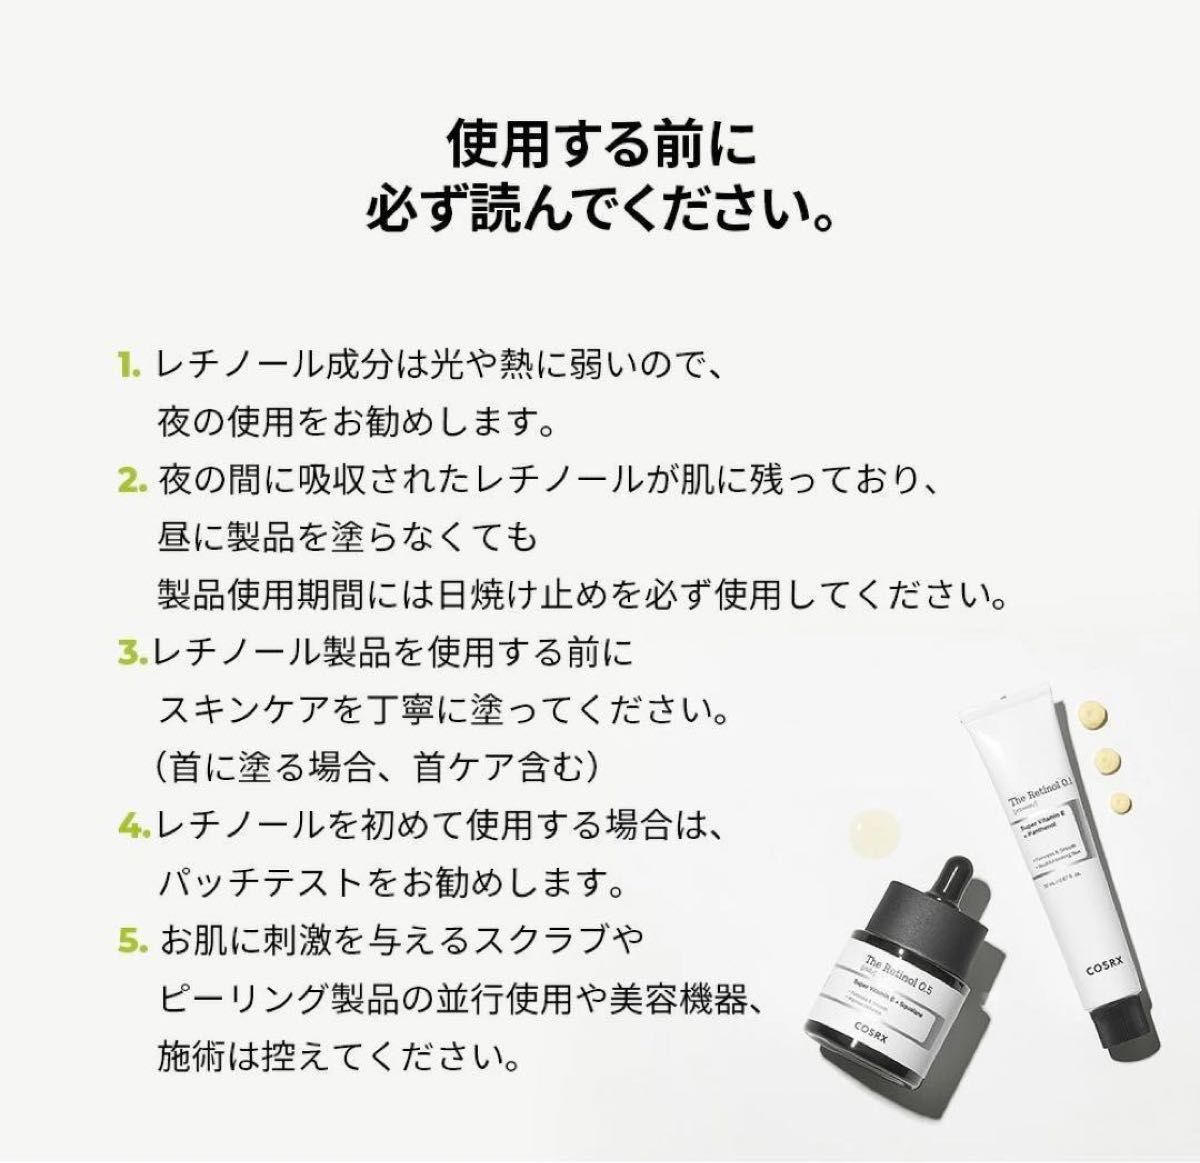 【新品未使用】COSRX ザ・レチノール 0.1クリーム 20ml